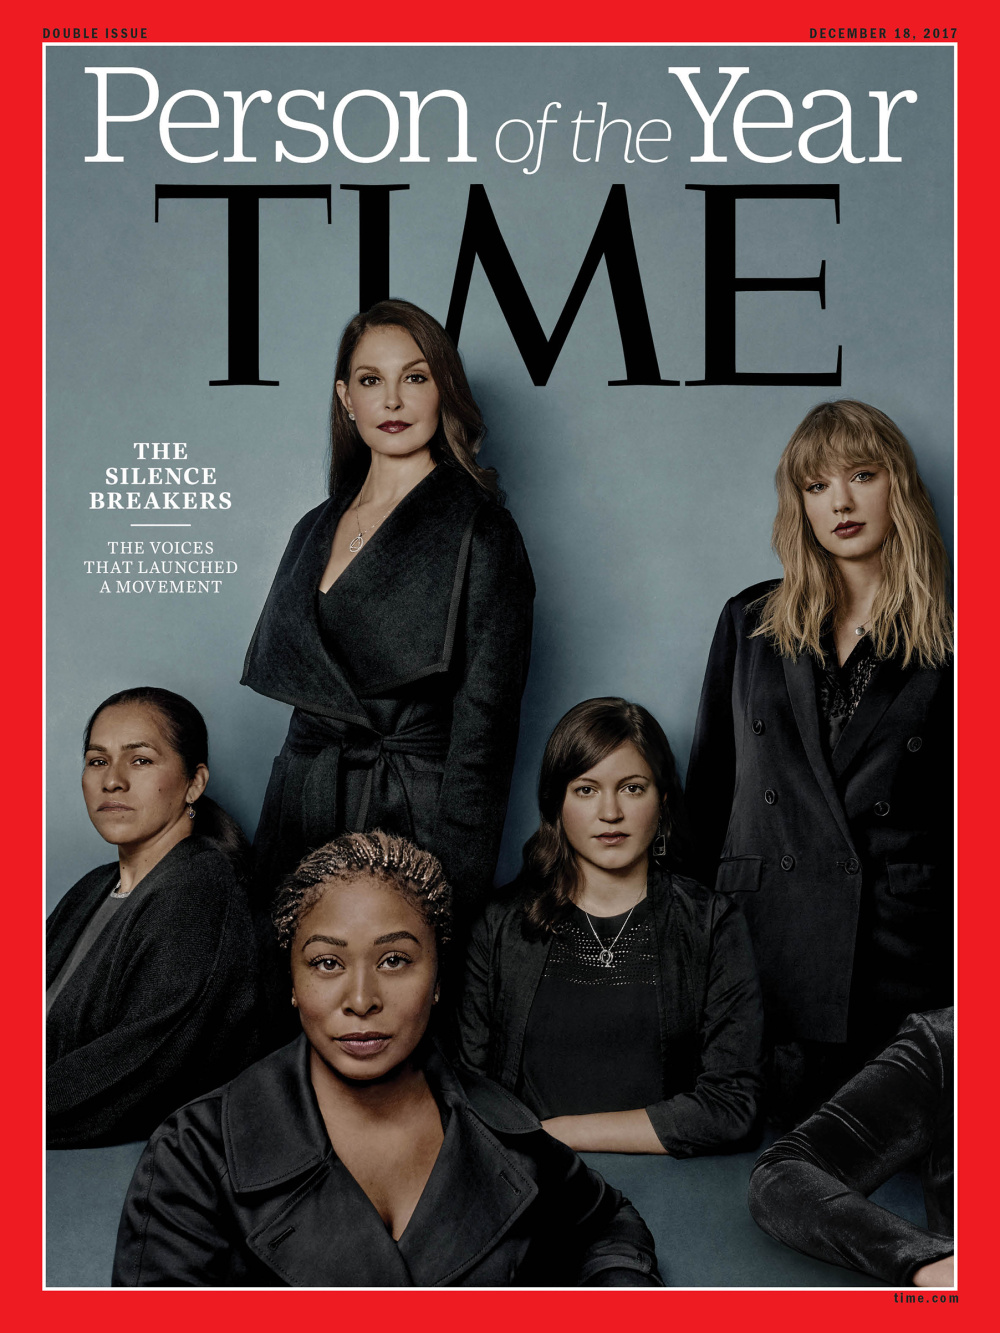 กลุ่มปลดปล่อยตนเองจากการเป็น 'เหยื่อคุกคามทางเพศ' คว้า 'บุคคลแห่งปี 2017' จาก นิตยสาร Time